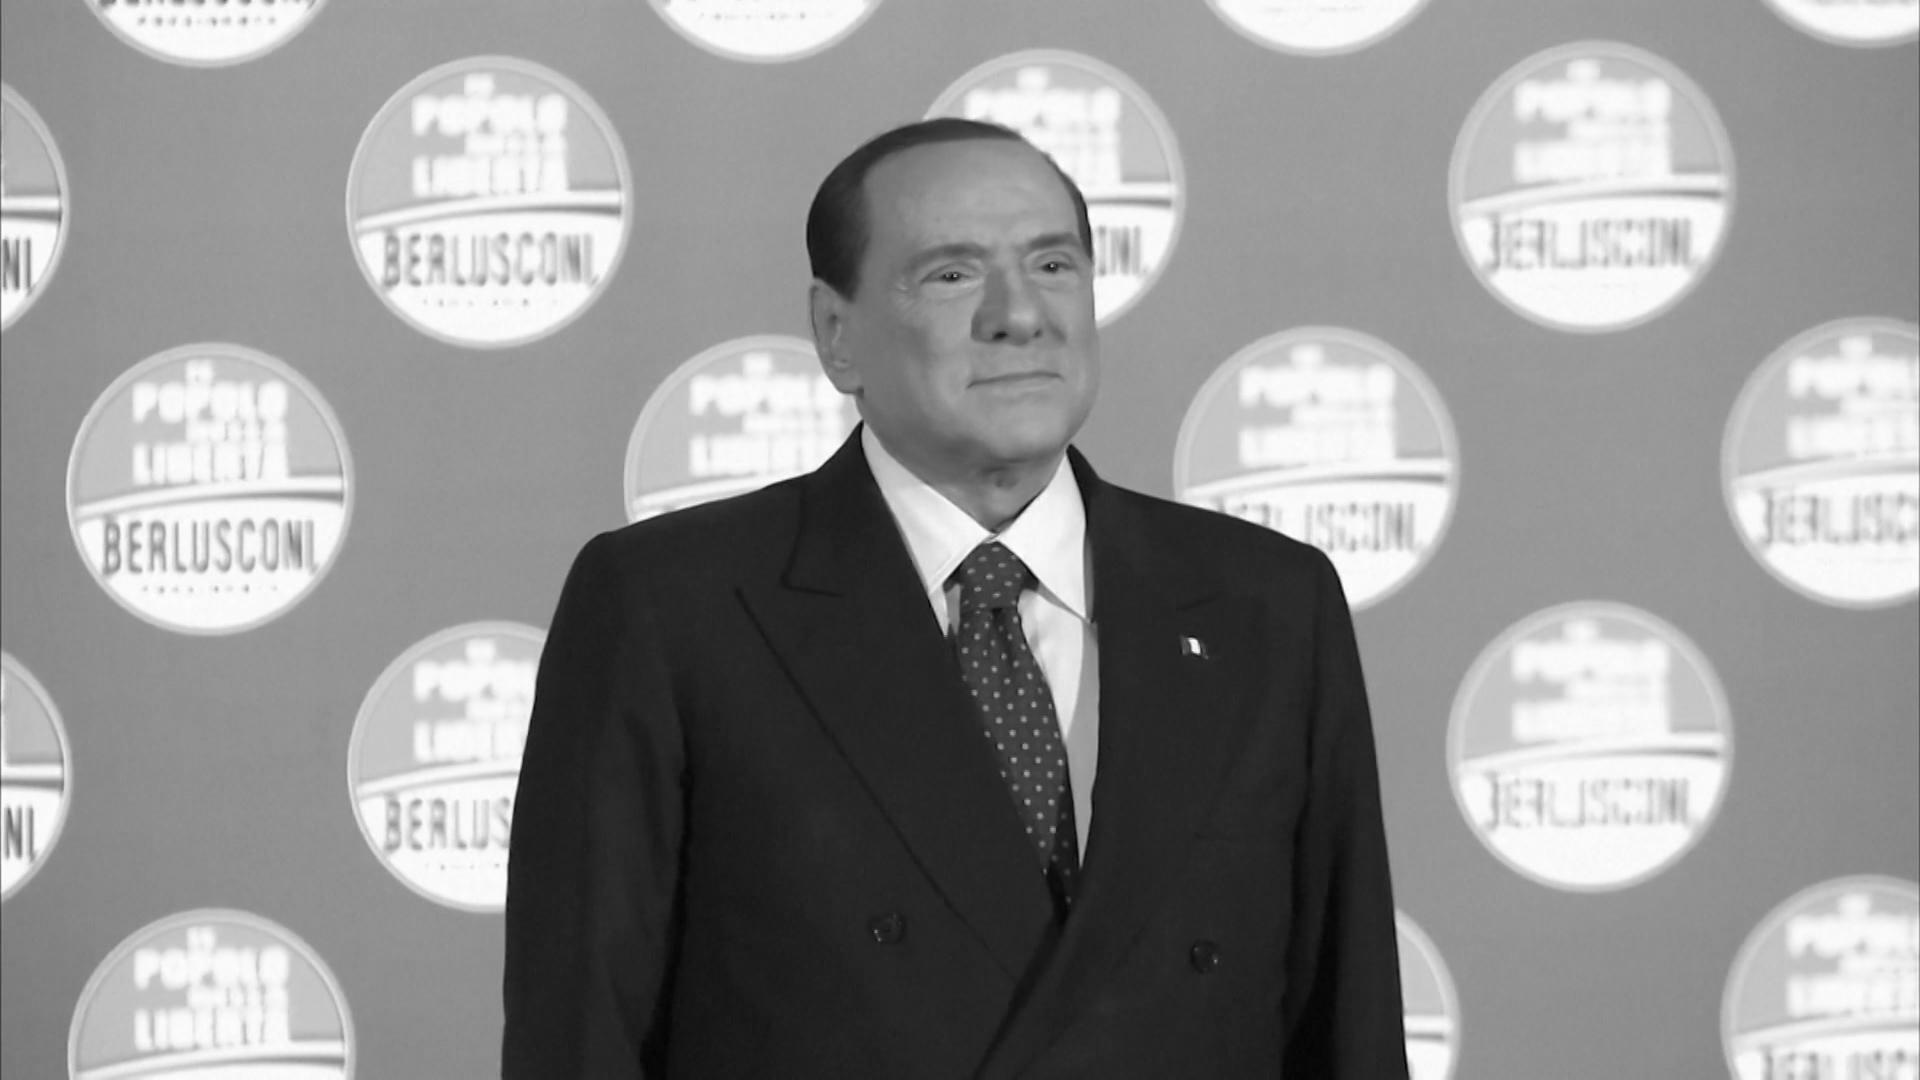 Silvio Berlusconi im Alter von 86 Jahren gestorben Ex-Ministerpräsident ist tot